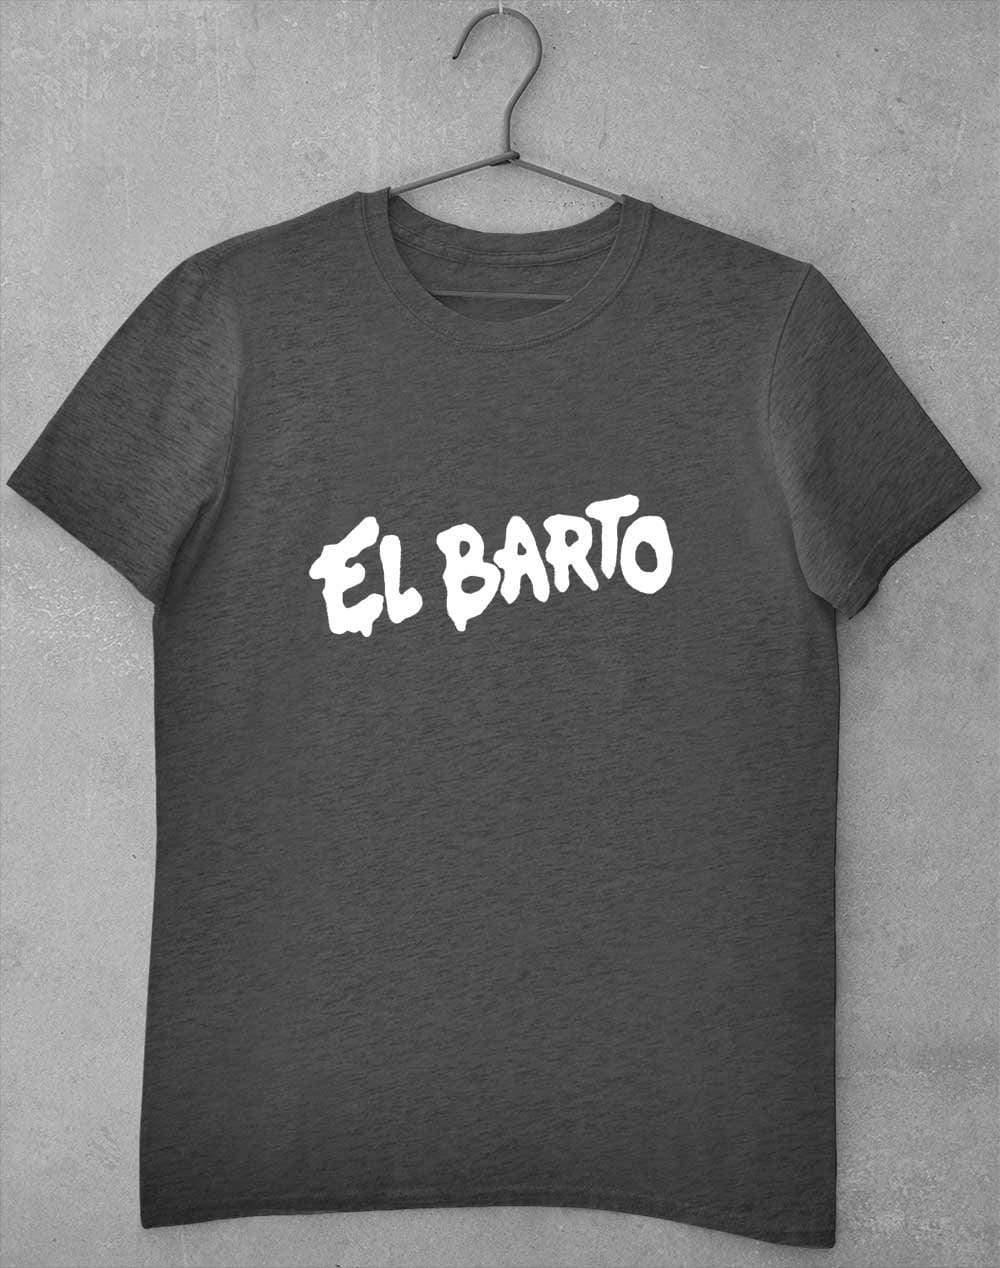 El Barto Tag T-Shirt S / Dark Heather  - Off World Tees